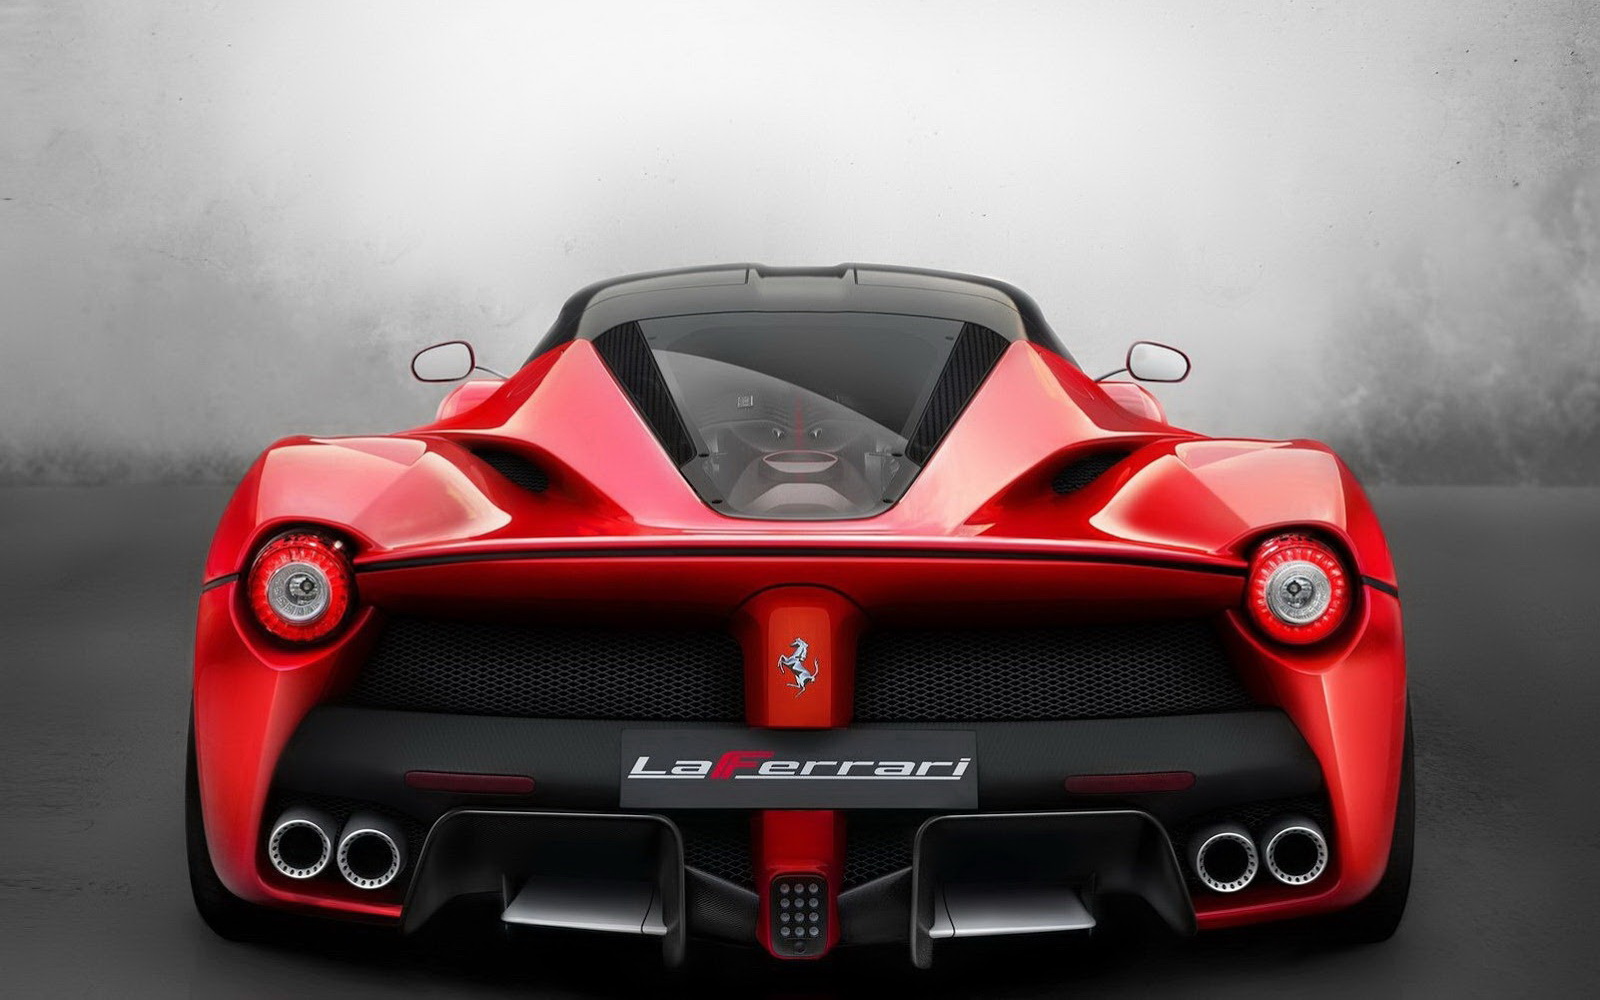 Description New Ferrari La Wallpaper HD Is A Hi Res